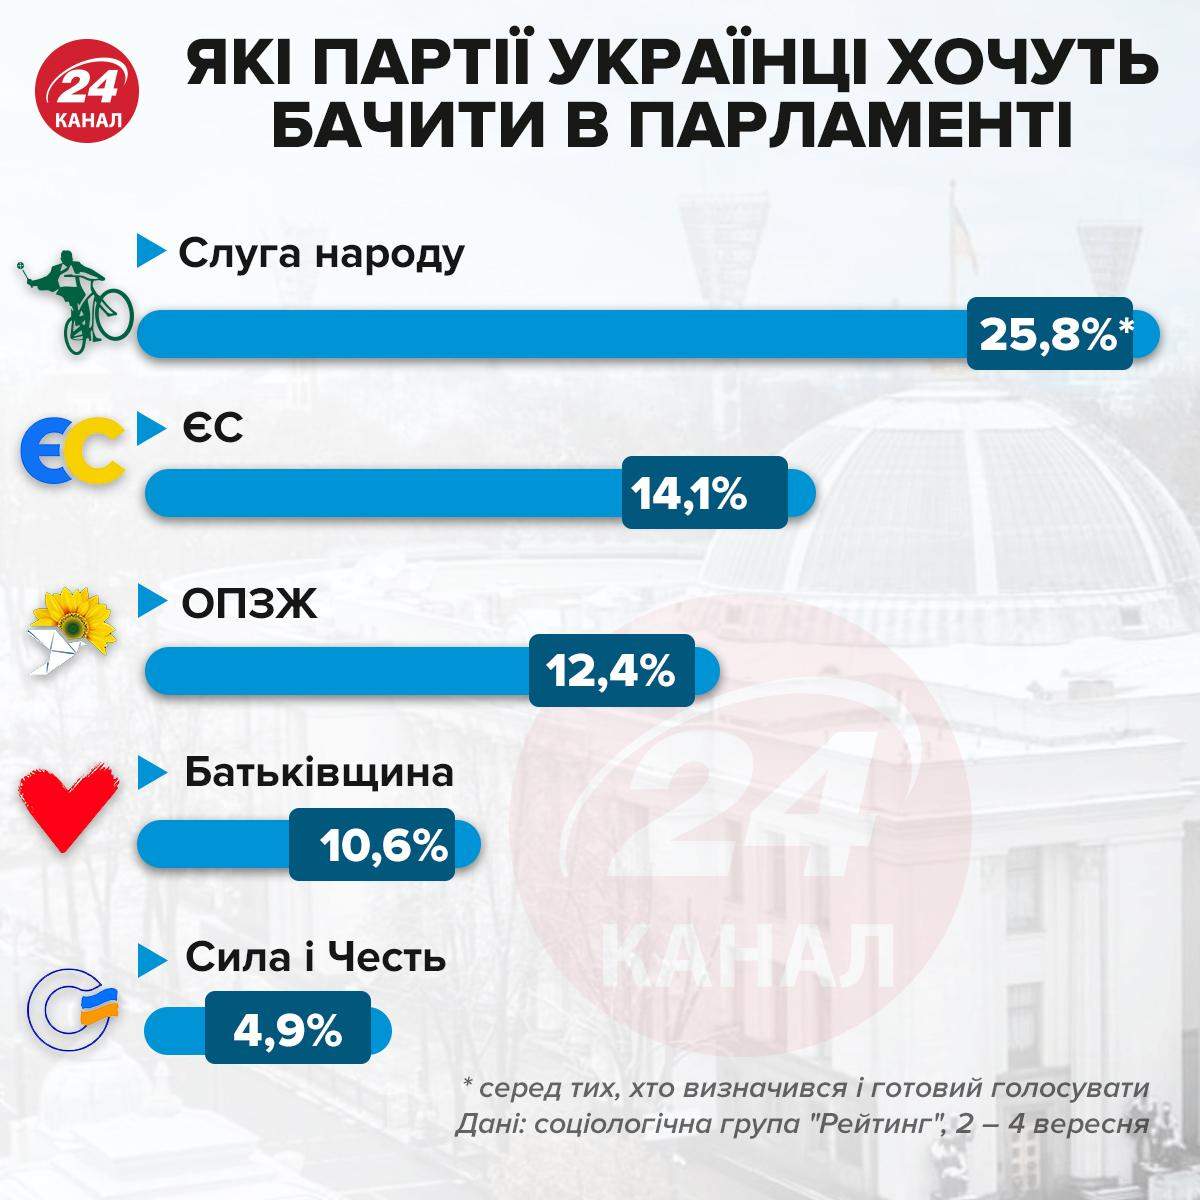 Які партії українці хочуть бачити у парламенті / Інфографіка 24 каналу